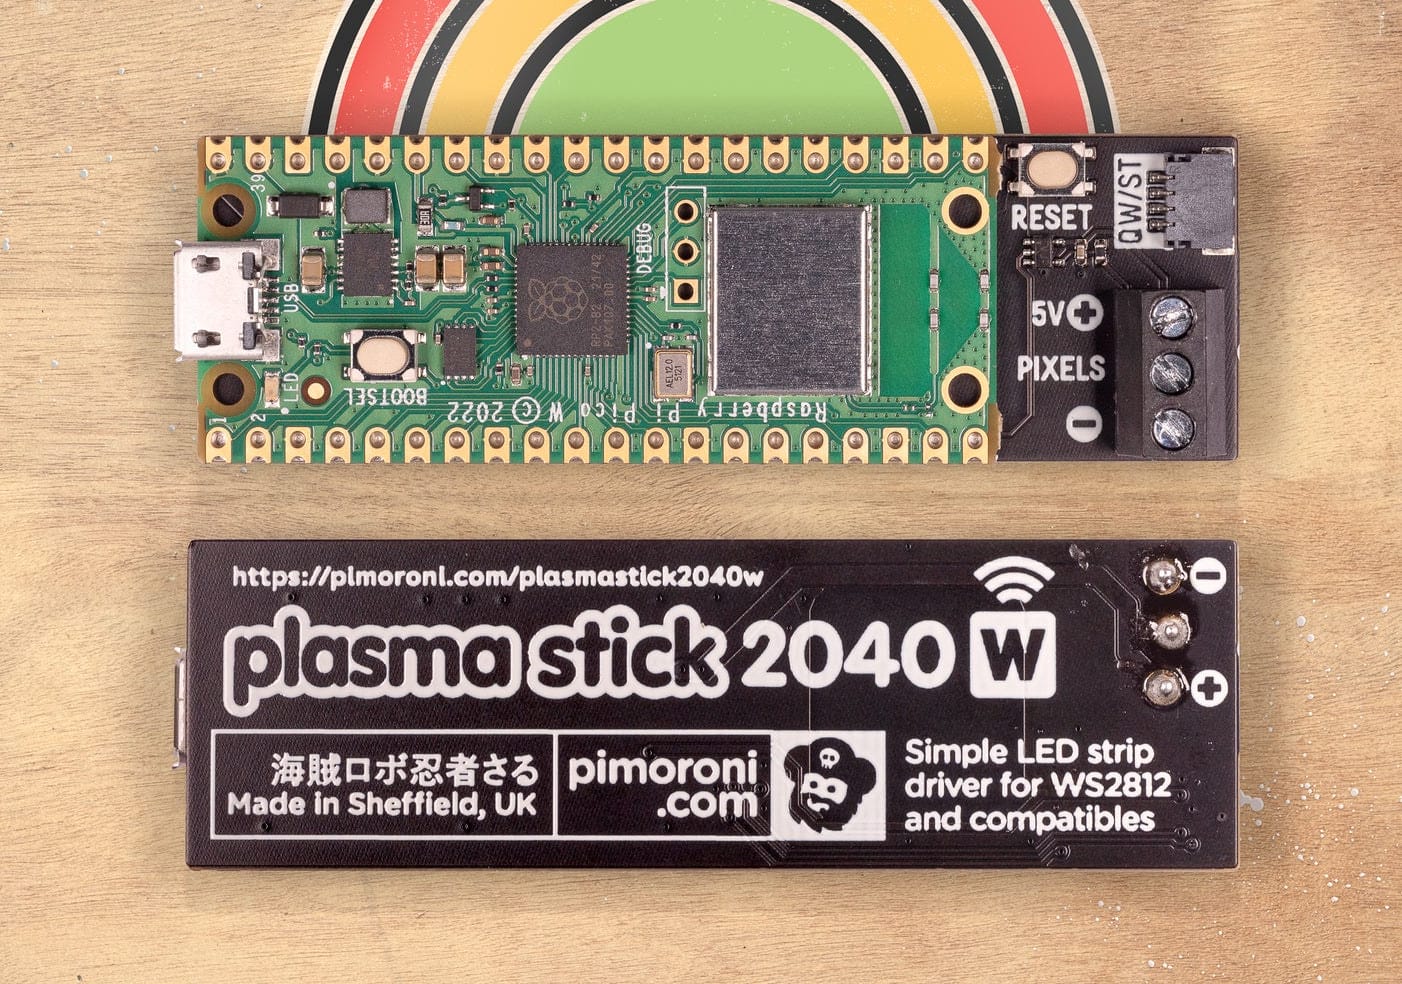 Plasma Stick 2040 W